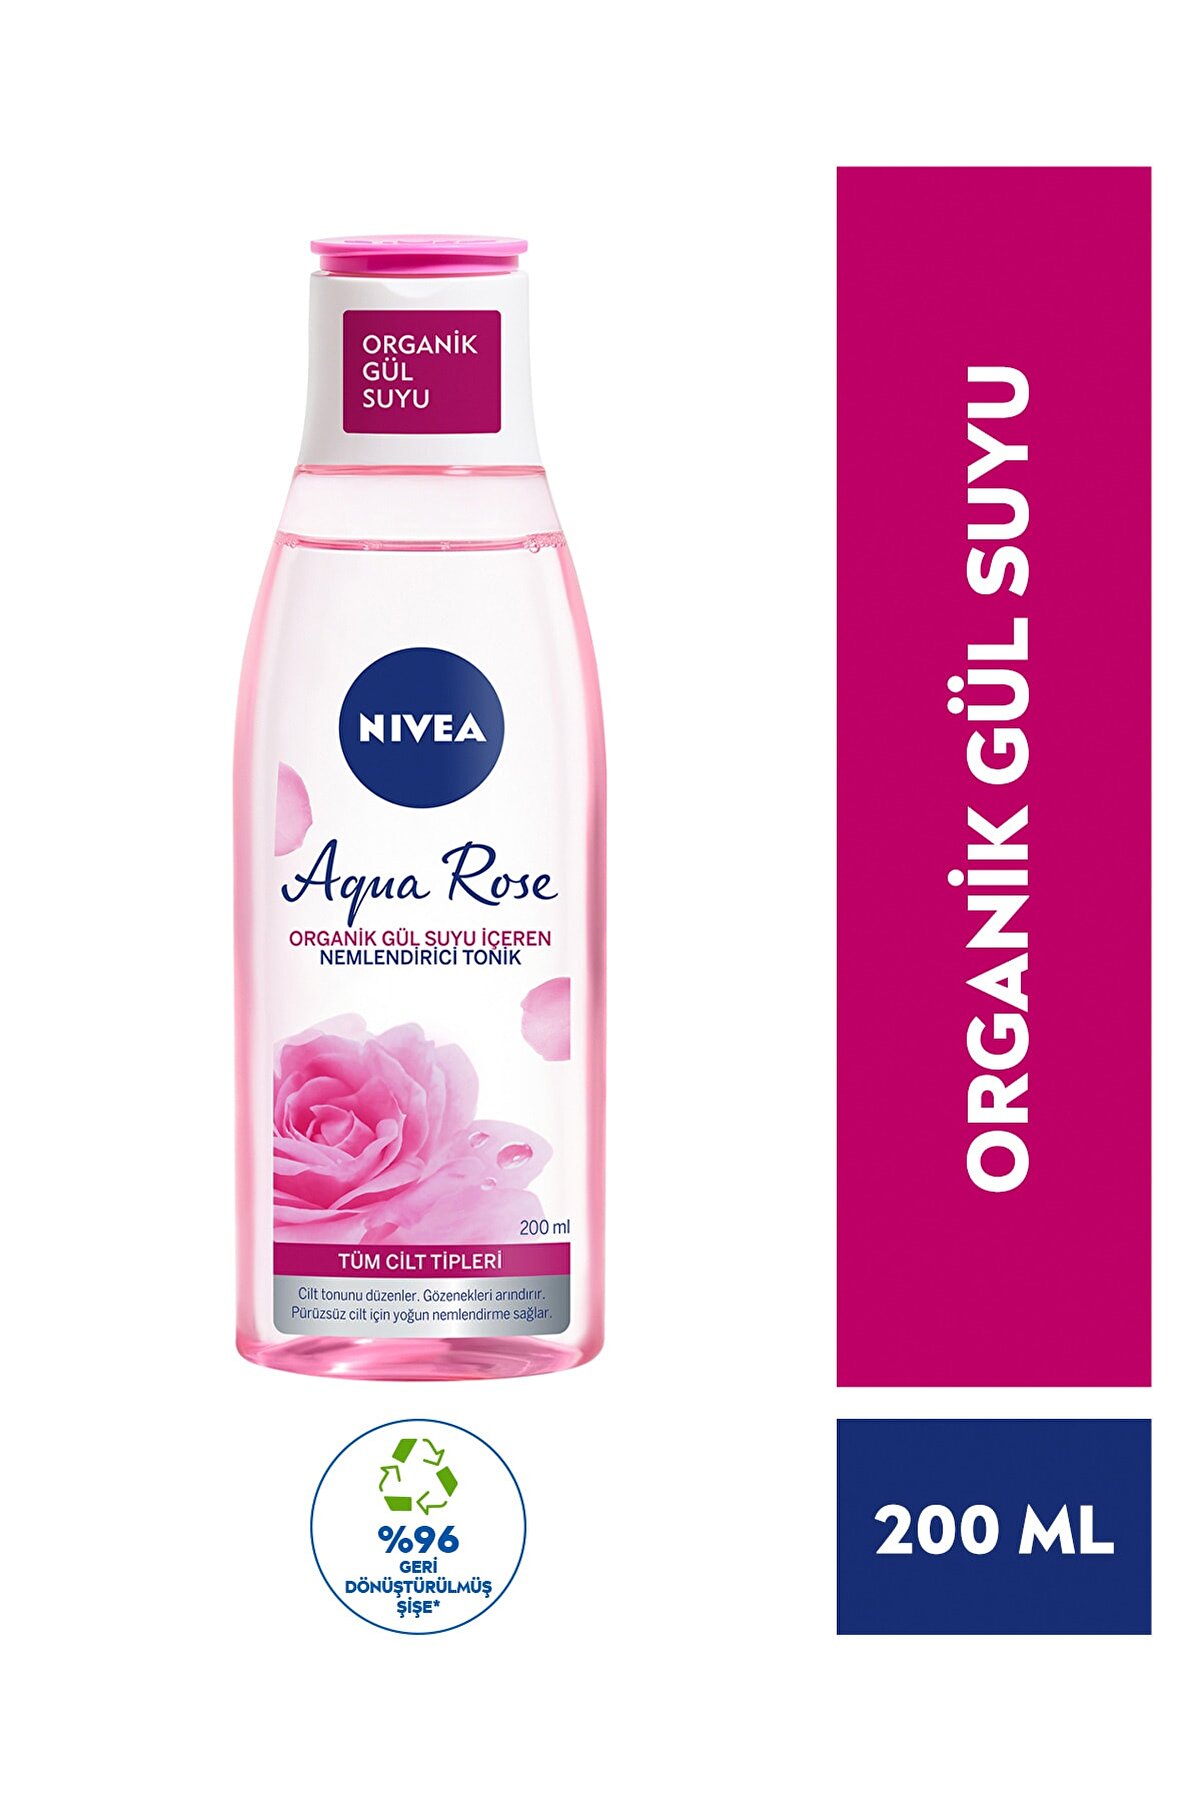 Aqua Rose Organik Gül Suyu İçeren Nemlendirici Tonik 200ml,Tüm Cilt Tipleri,24 Saat Yüz Nemlendirici_0